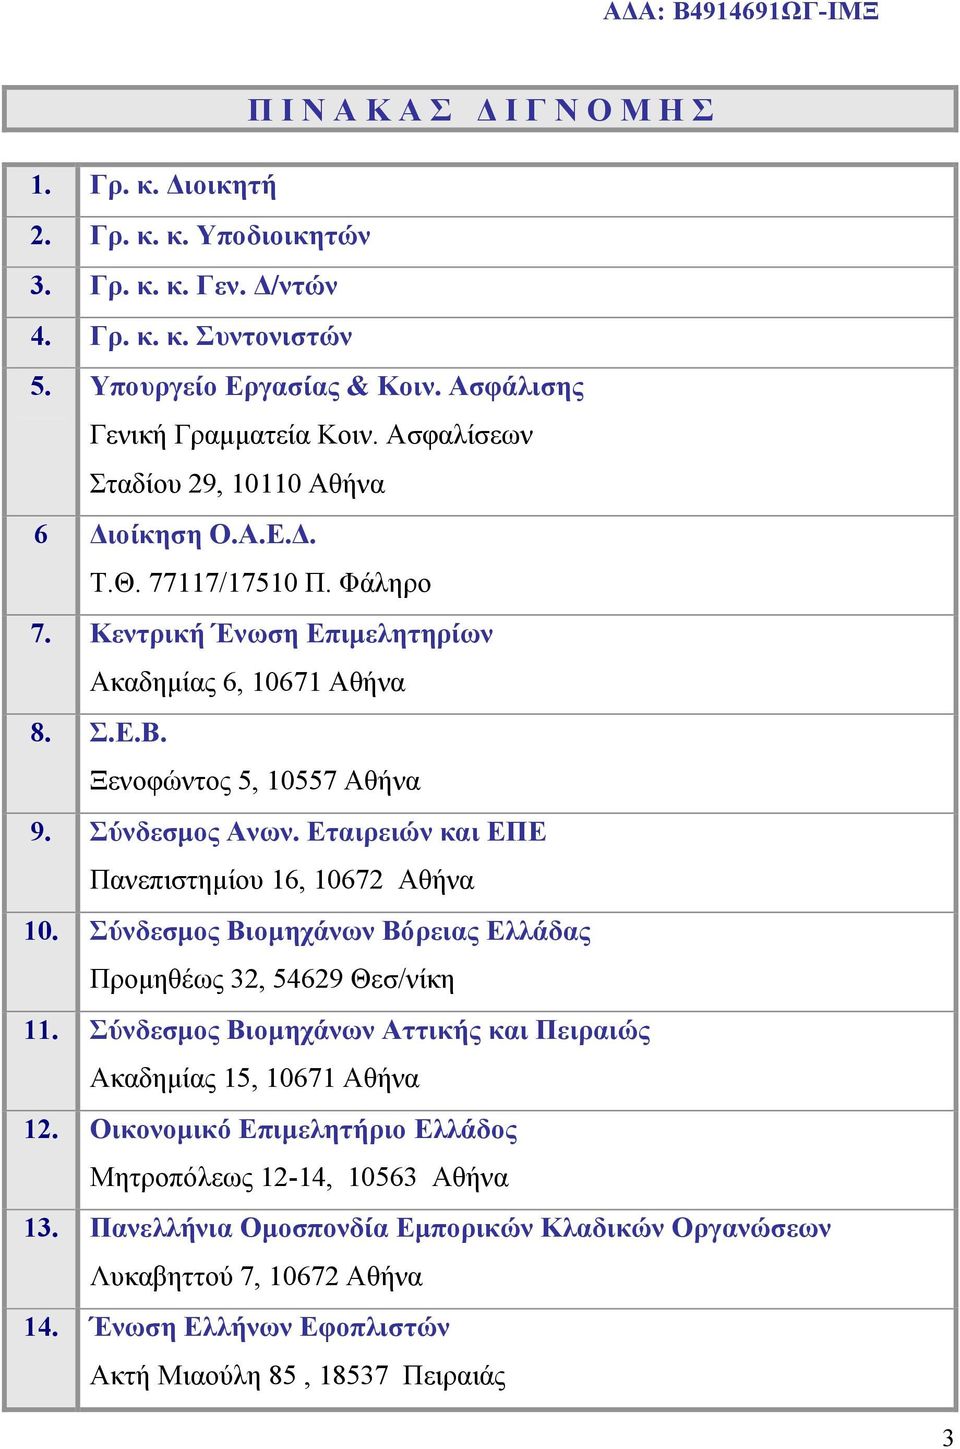 Εταιρειών και ΕΠΕ Πανεπιστημίου 16, 10672 Αθήνα 10. Σύνδεσμος Βιομηχάνων Βόρειας Ελλάδας Προμηθέως 32, 54629 Θεσ/νίκη 11. Σύνδεσμος Βιομηχάνων Αττικής και Πειραιώς Ακαδημίας 15, 10671 Αθήνα 12.